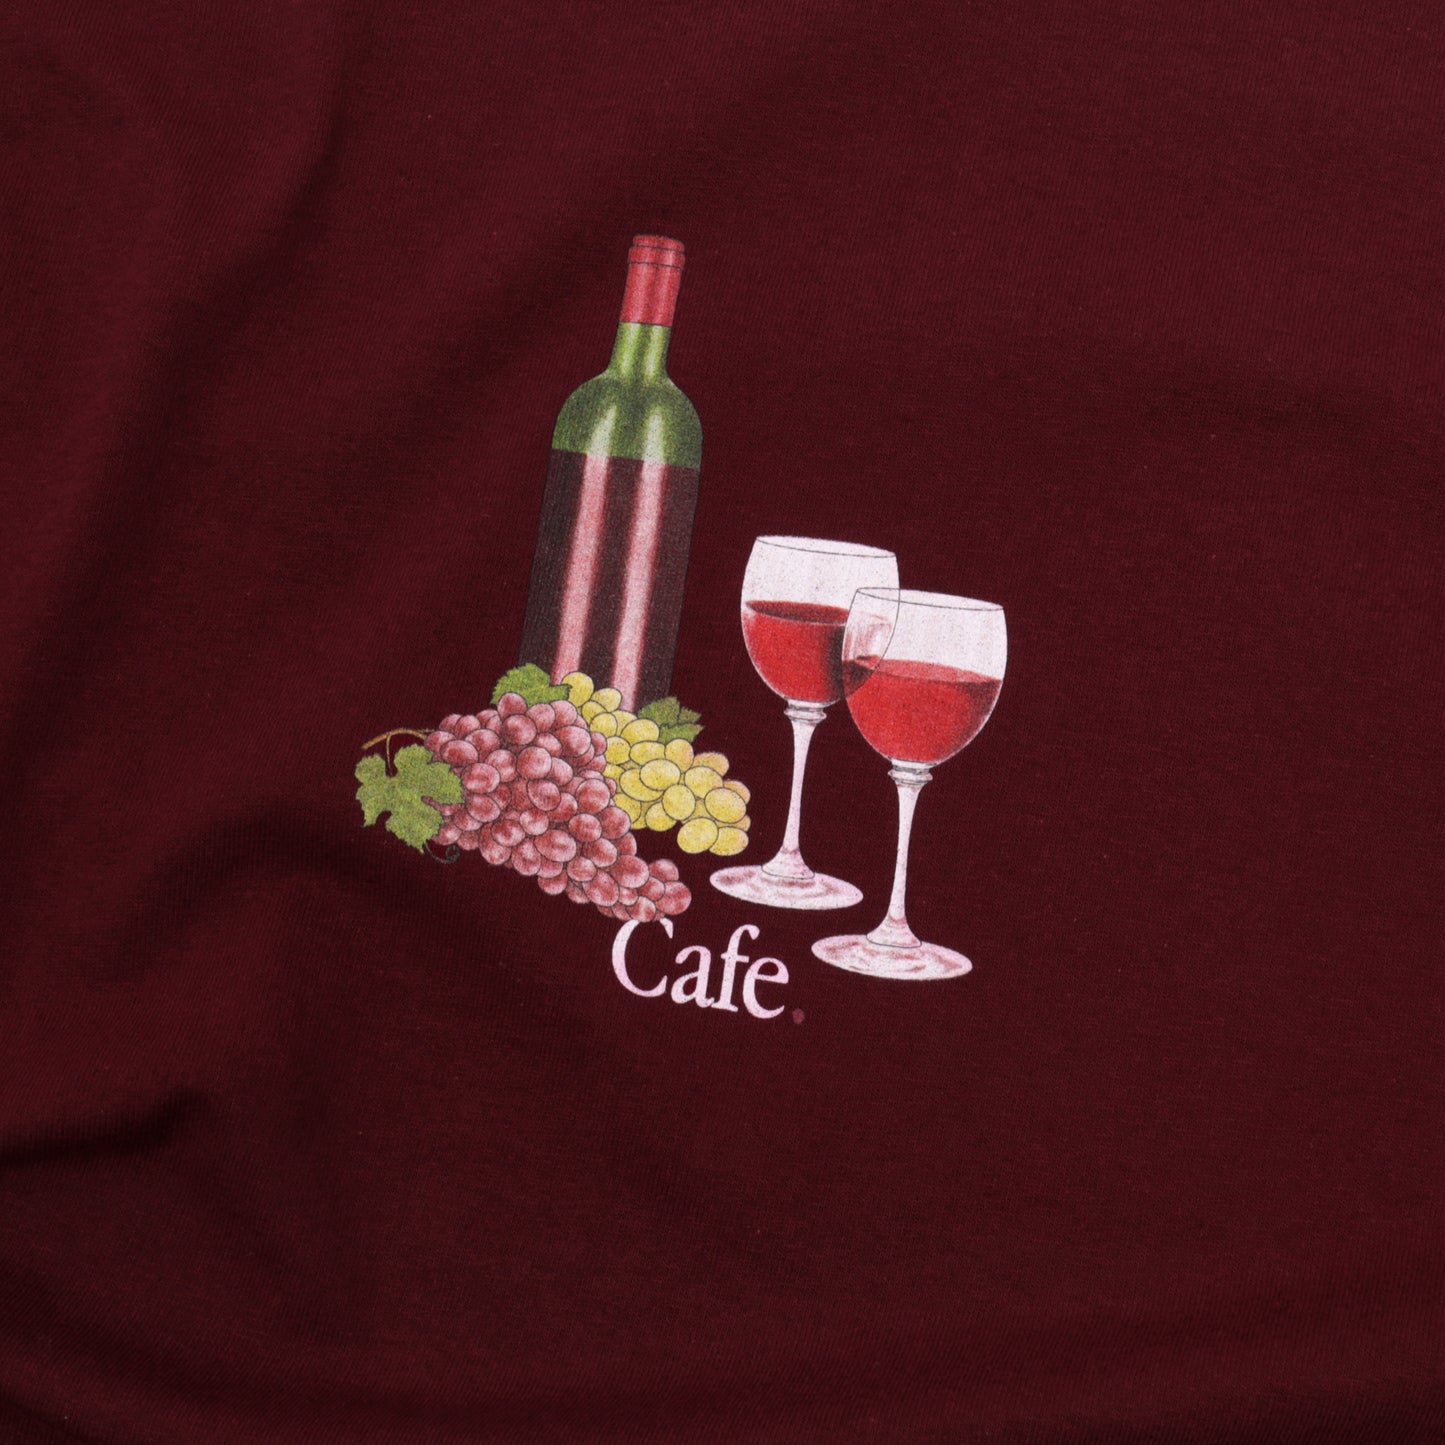 Skateboard Cafe 'Vino' T-shirt - Burgundy